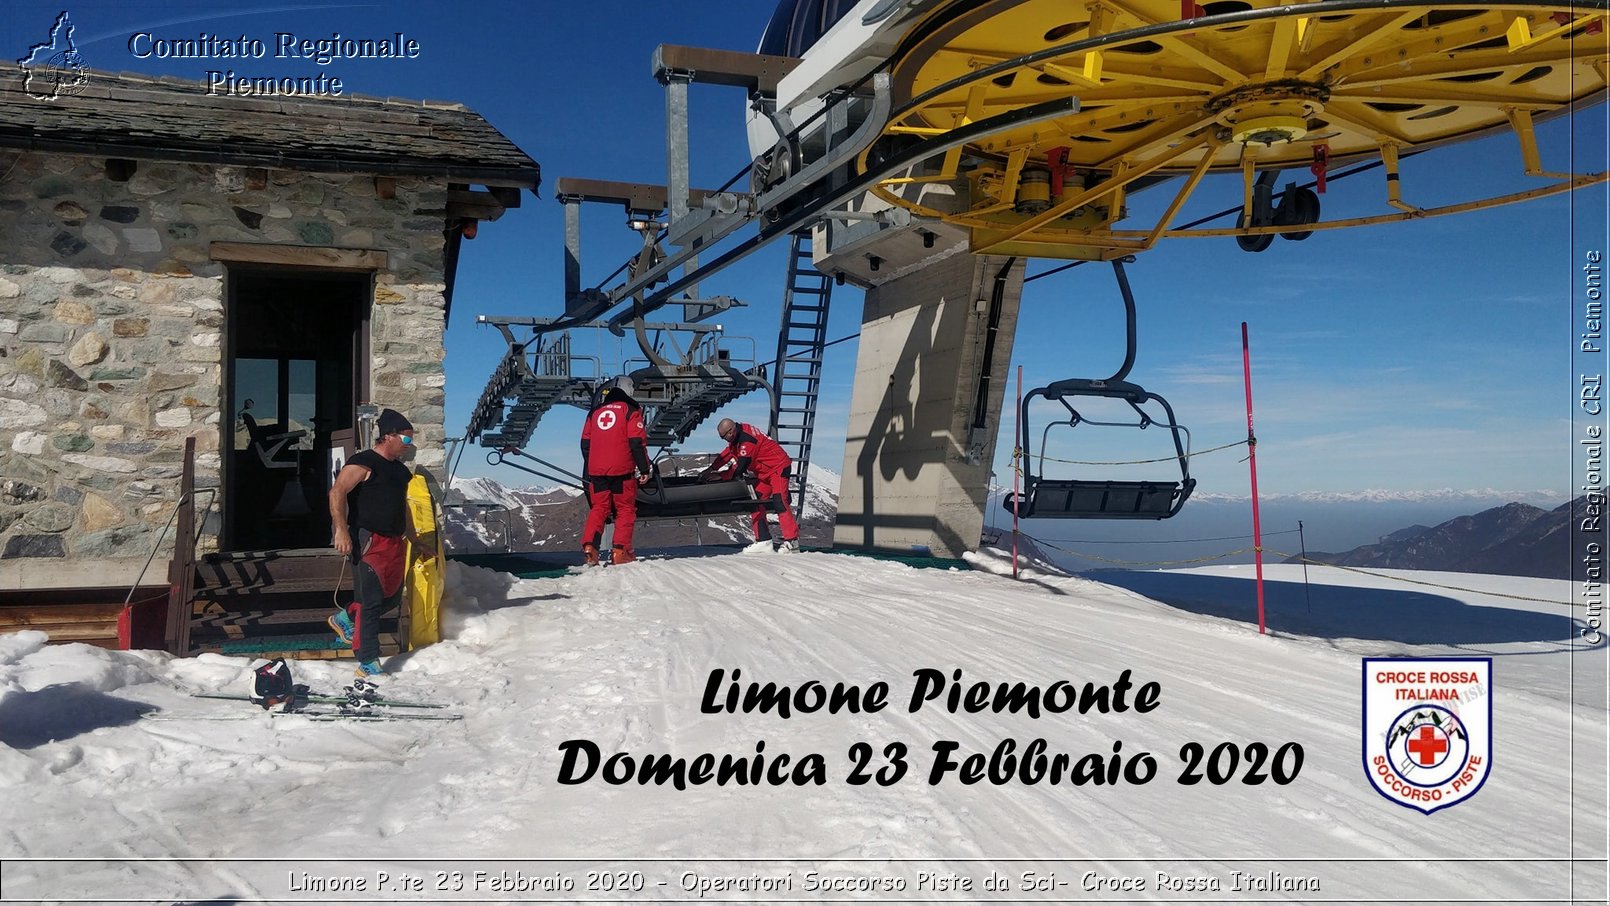 Limone P.te 23 Febbraio 2020 - Operatori Soccorso Piste da Sci - Croce Rossa Italiana